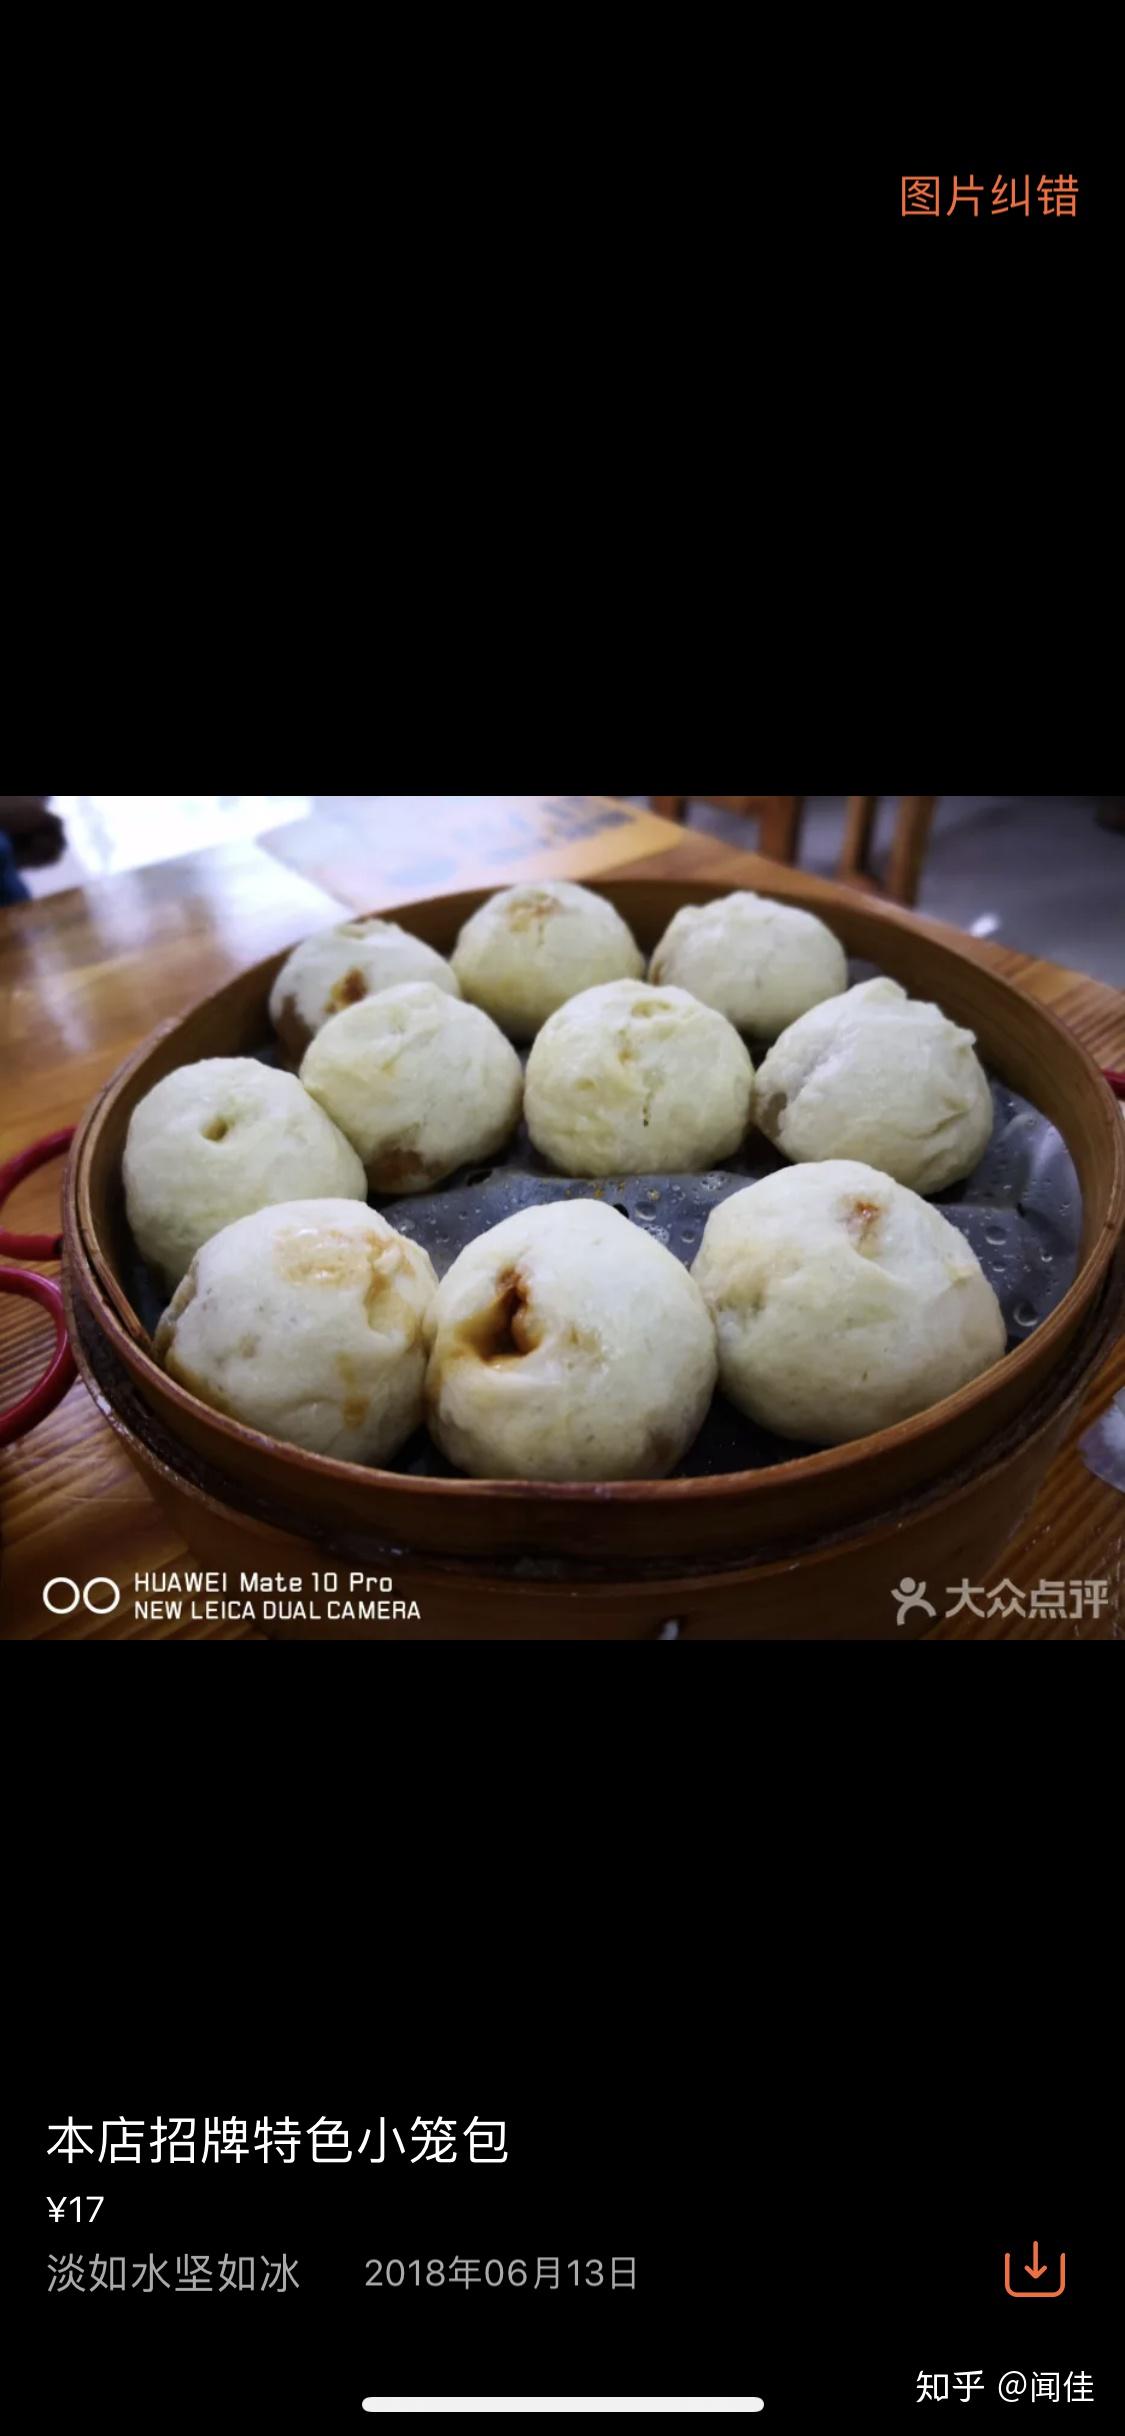 在上海哪里可以吃到杭州小笼包?